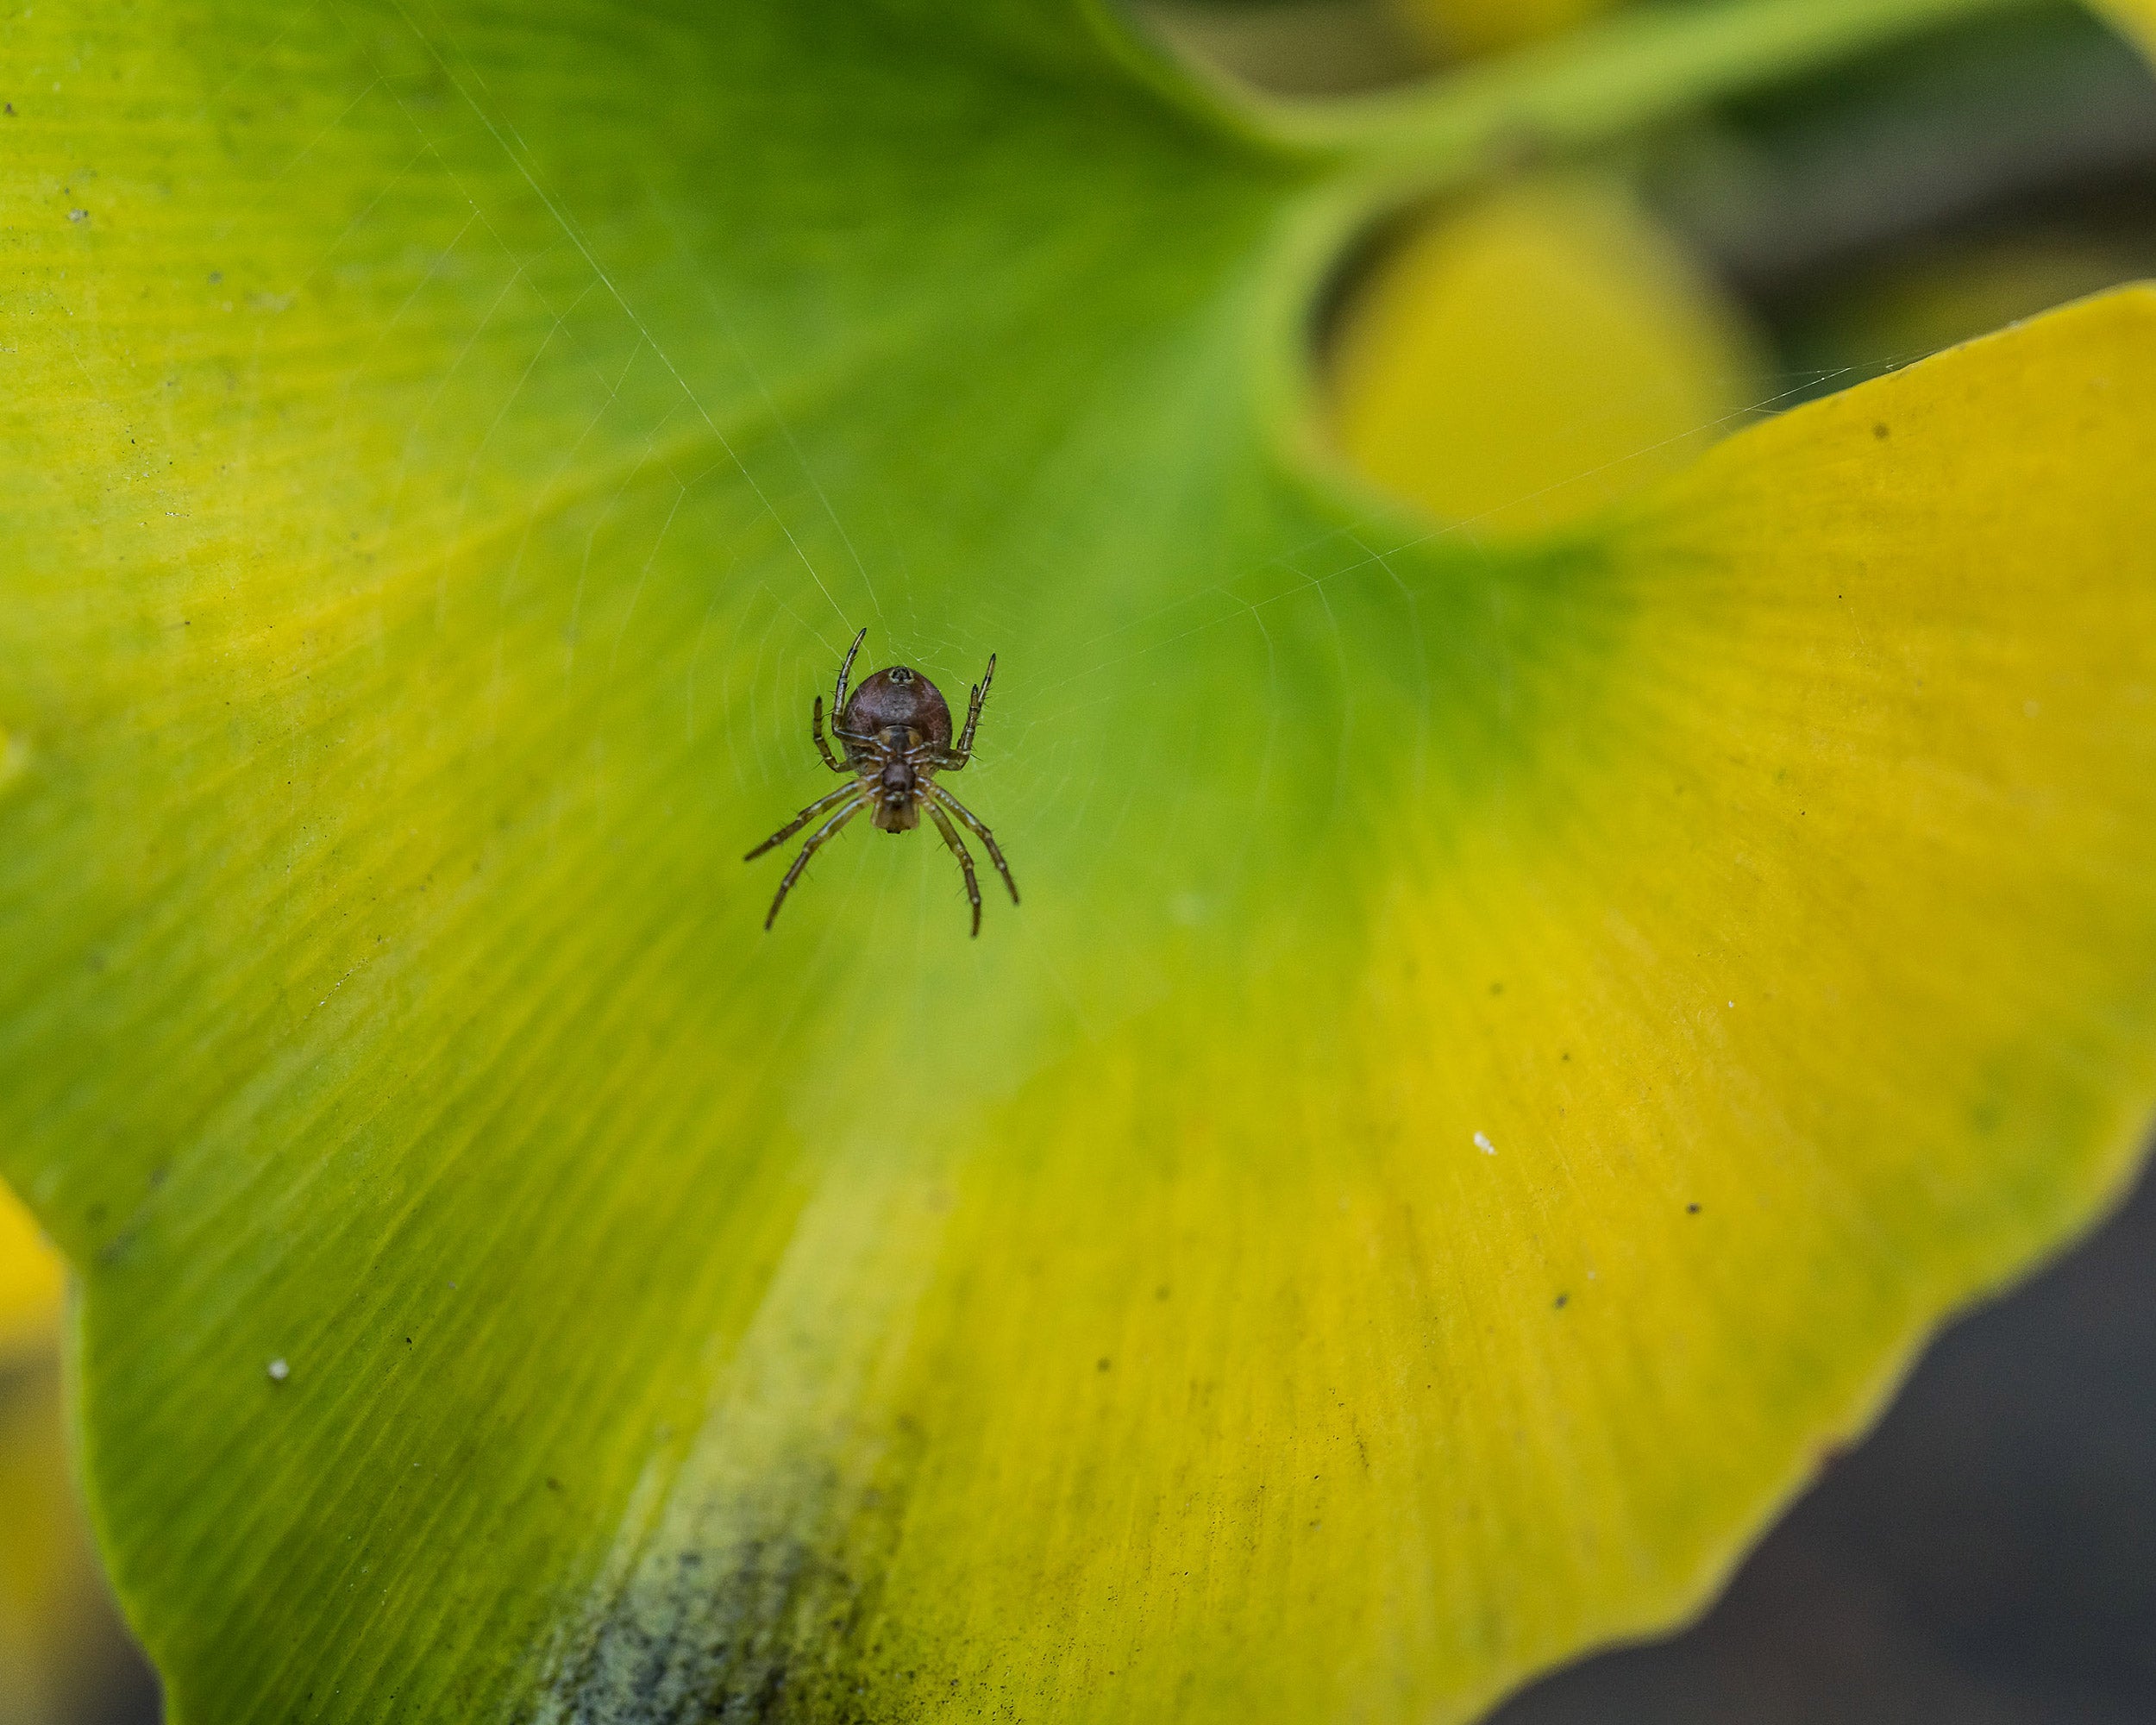 Spider on gingko leaf.